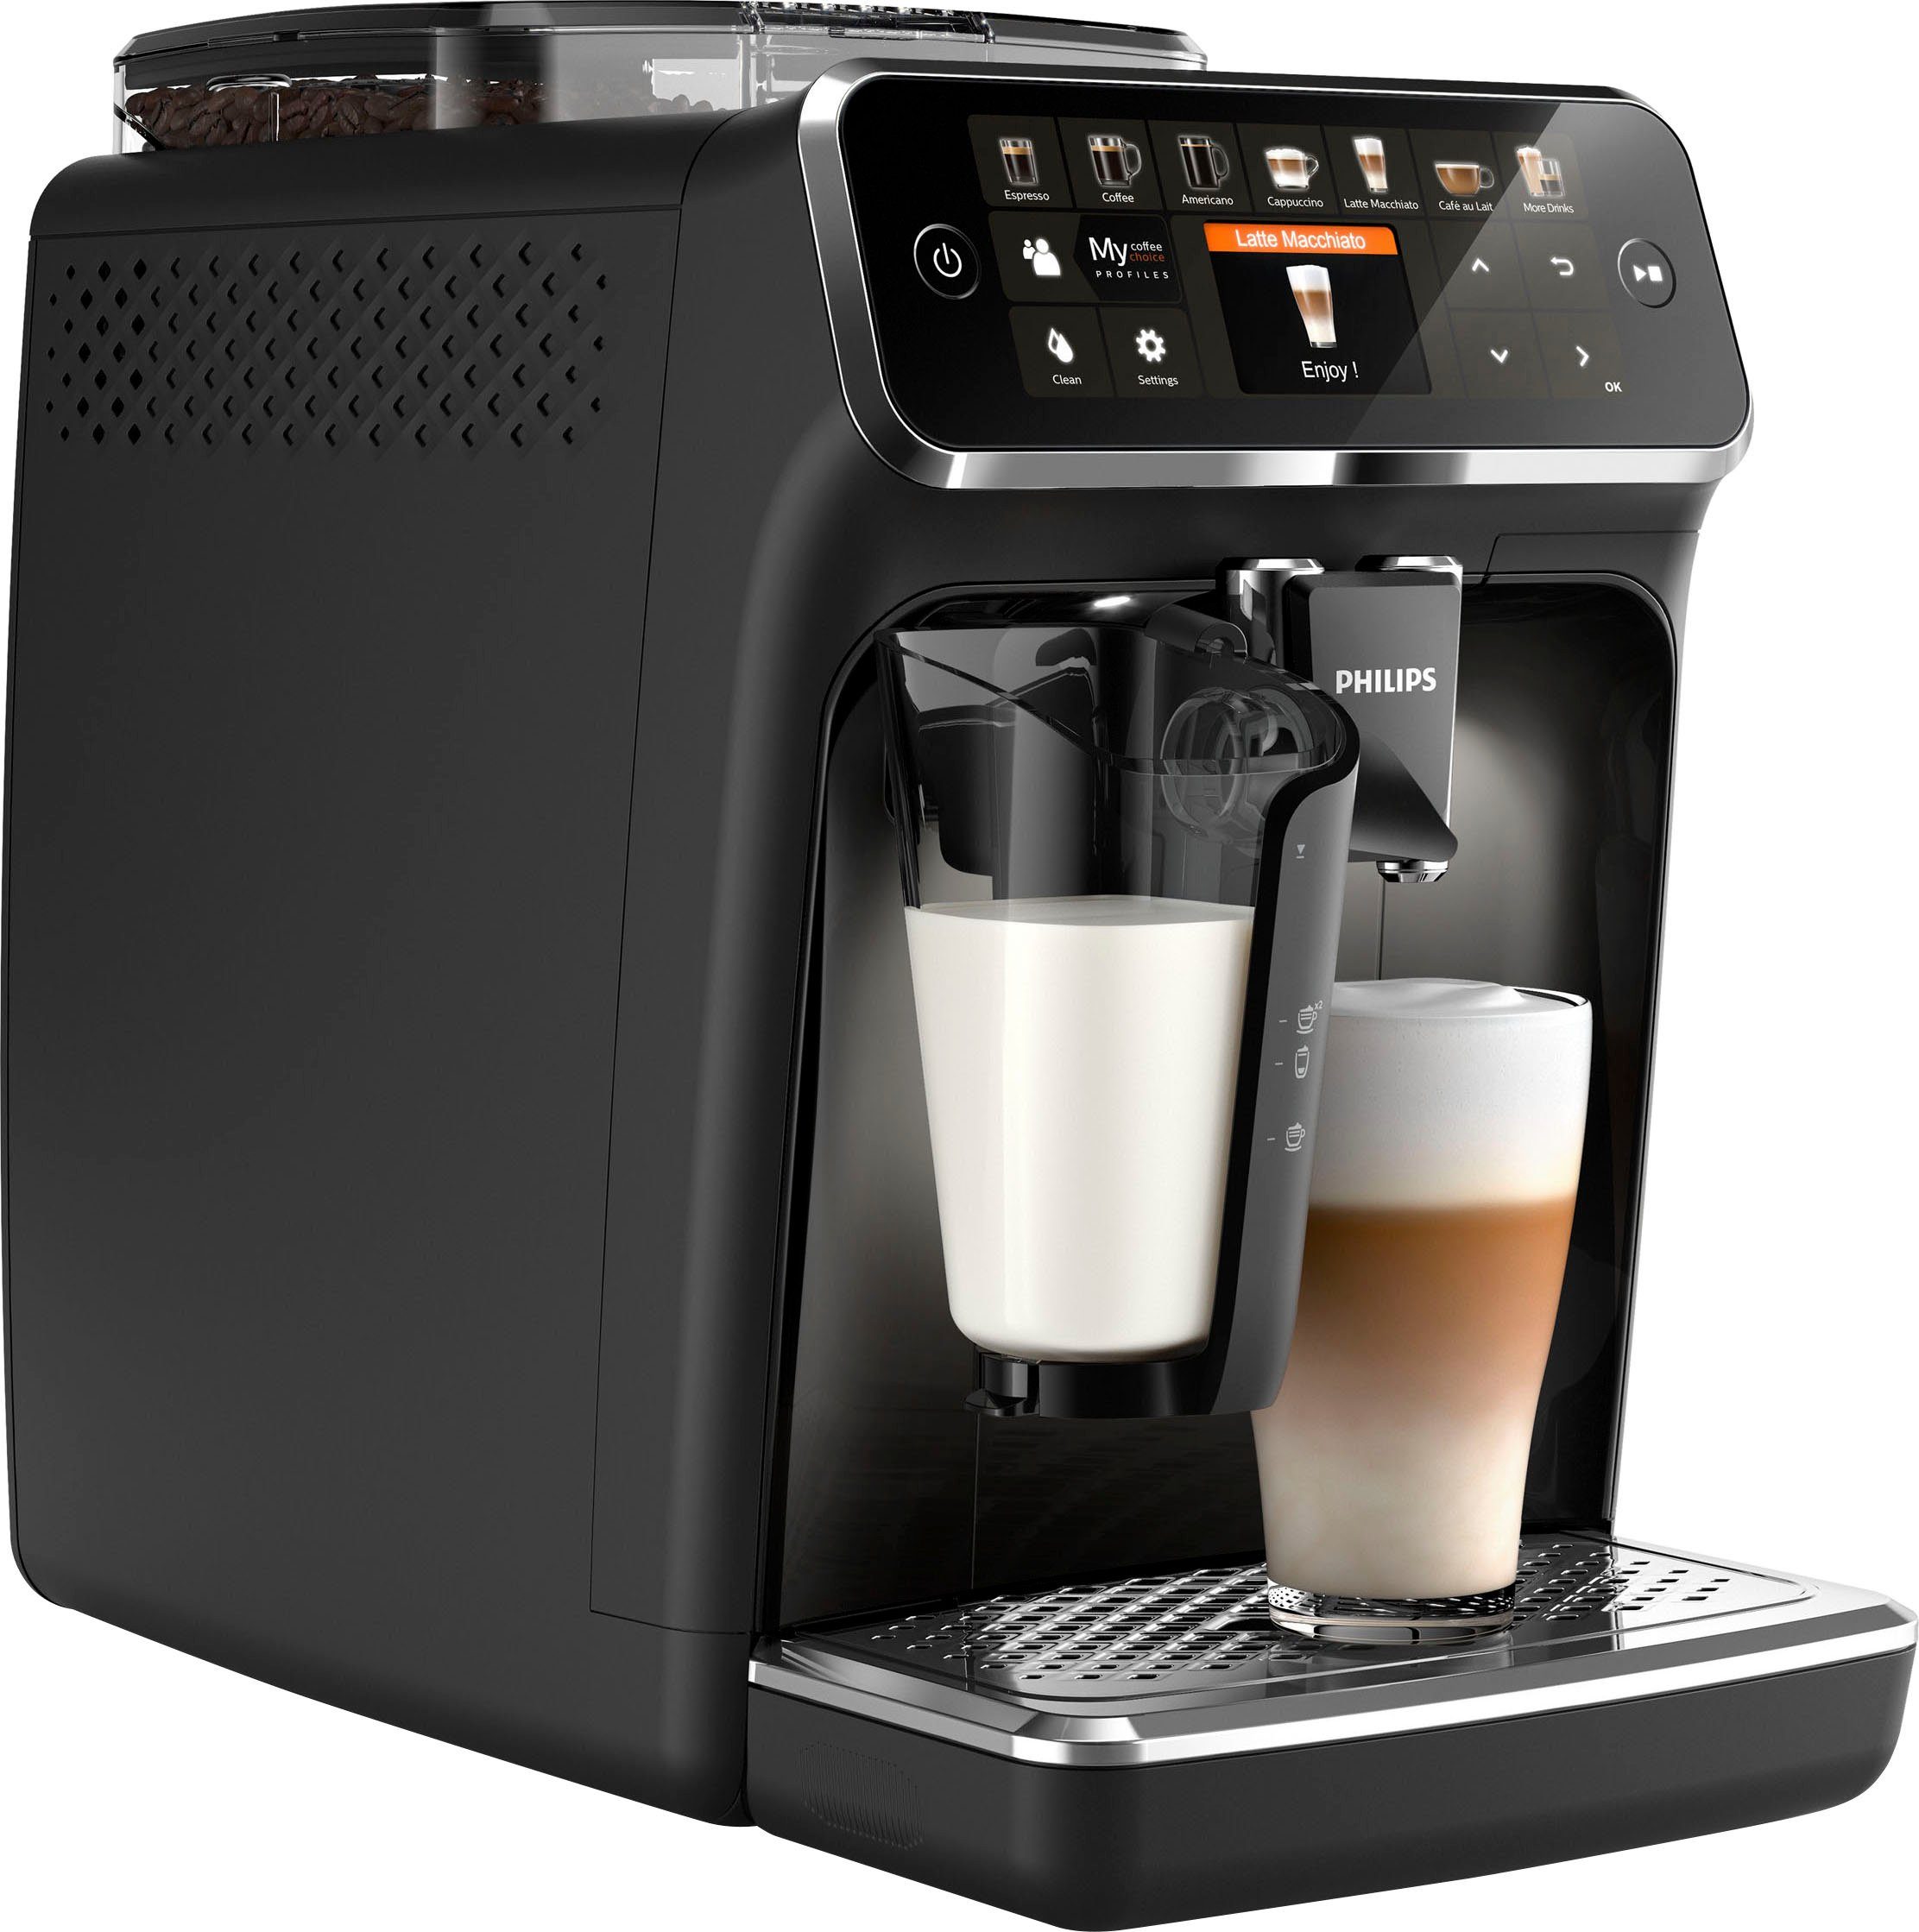 und mattschwarz Philips 12 5400 Kaffeevollautomat 4 Benutzerprofilen, Series Kaffeespezialitäten für EP5441/50 LatteGo,